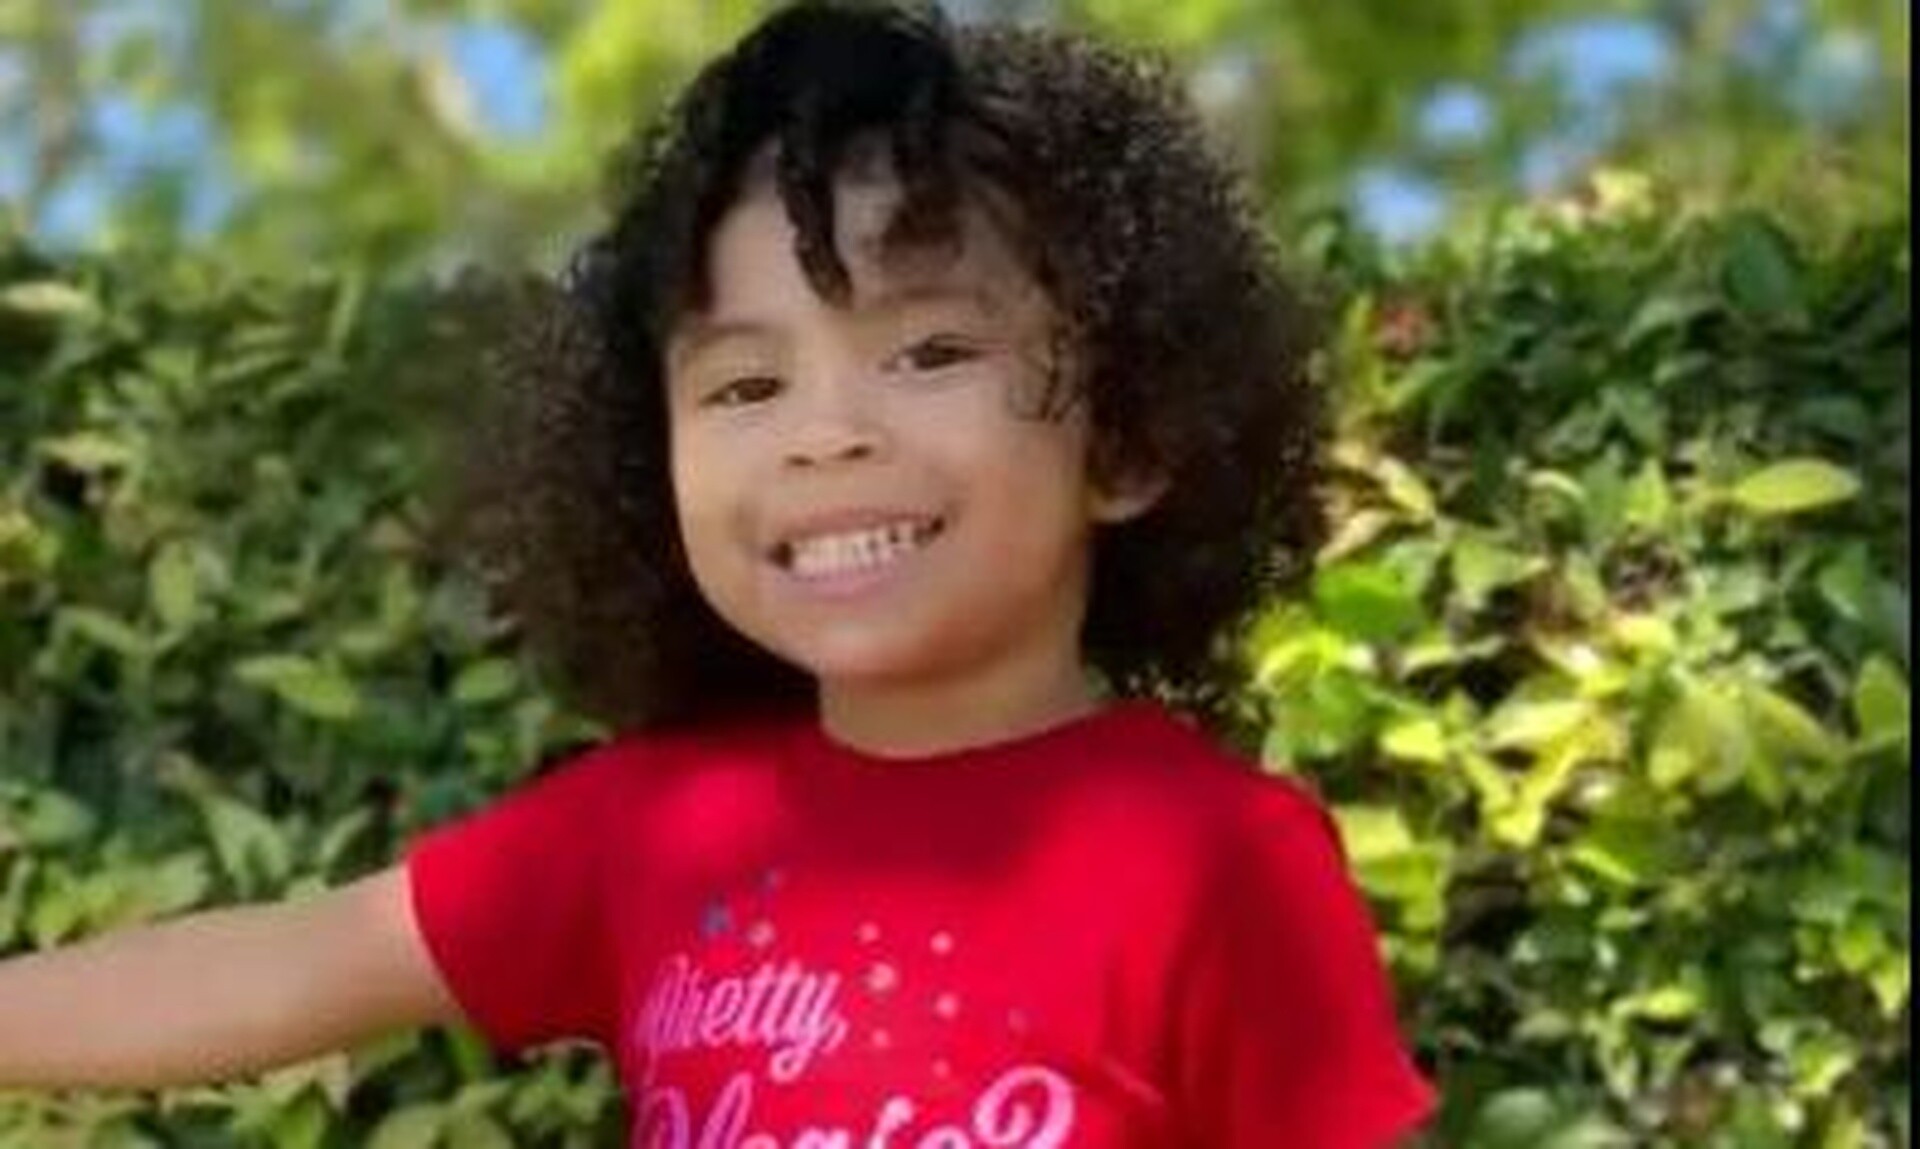 Φρίκη στις ΗΠΑ: Οικογένεια έκανε εξορκισμό μέχρι θανάτου σε 3χρονη -«Μαμά σ αγαπώ» είπε και ξεψύχησε